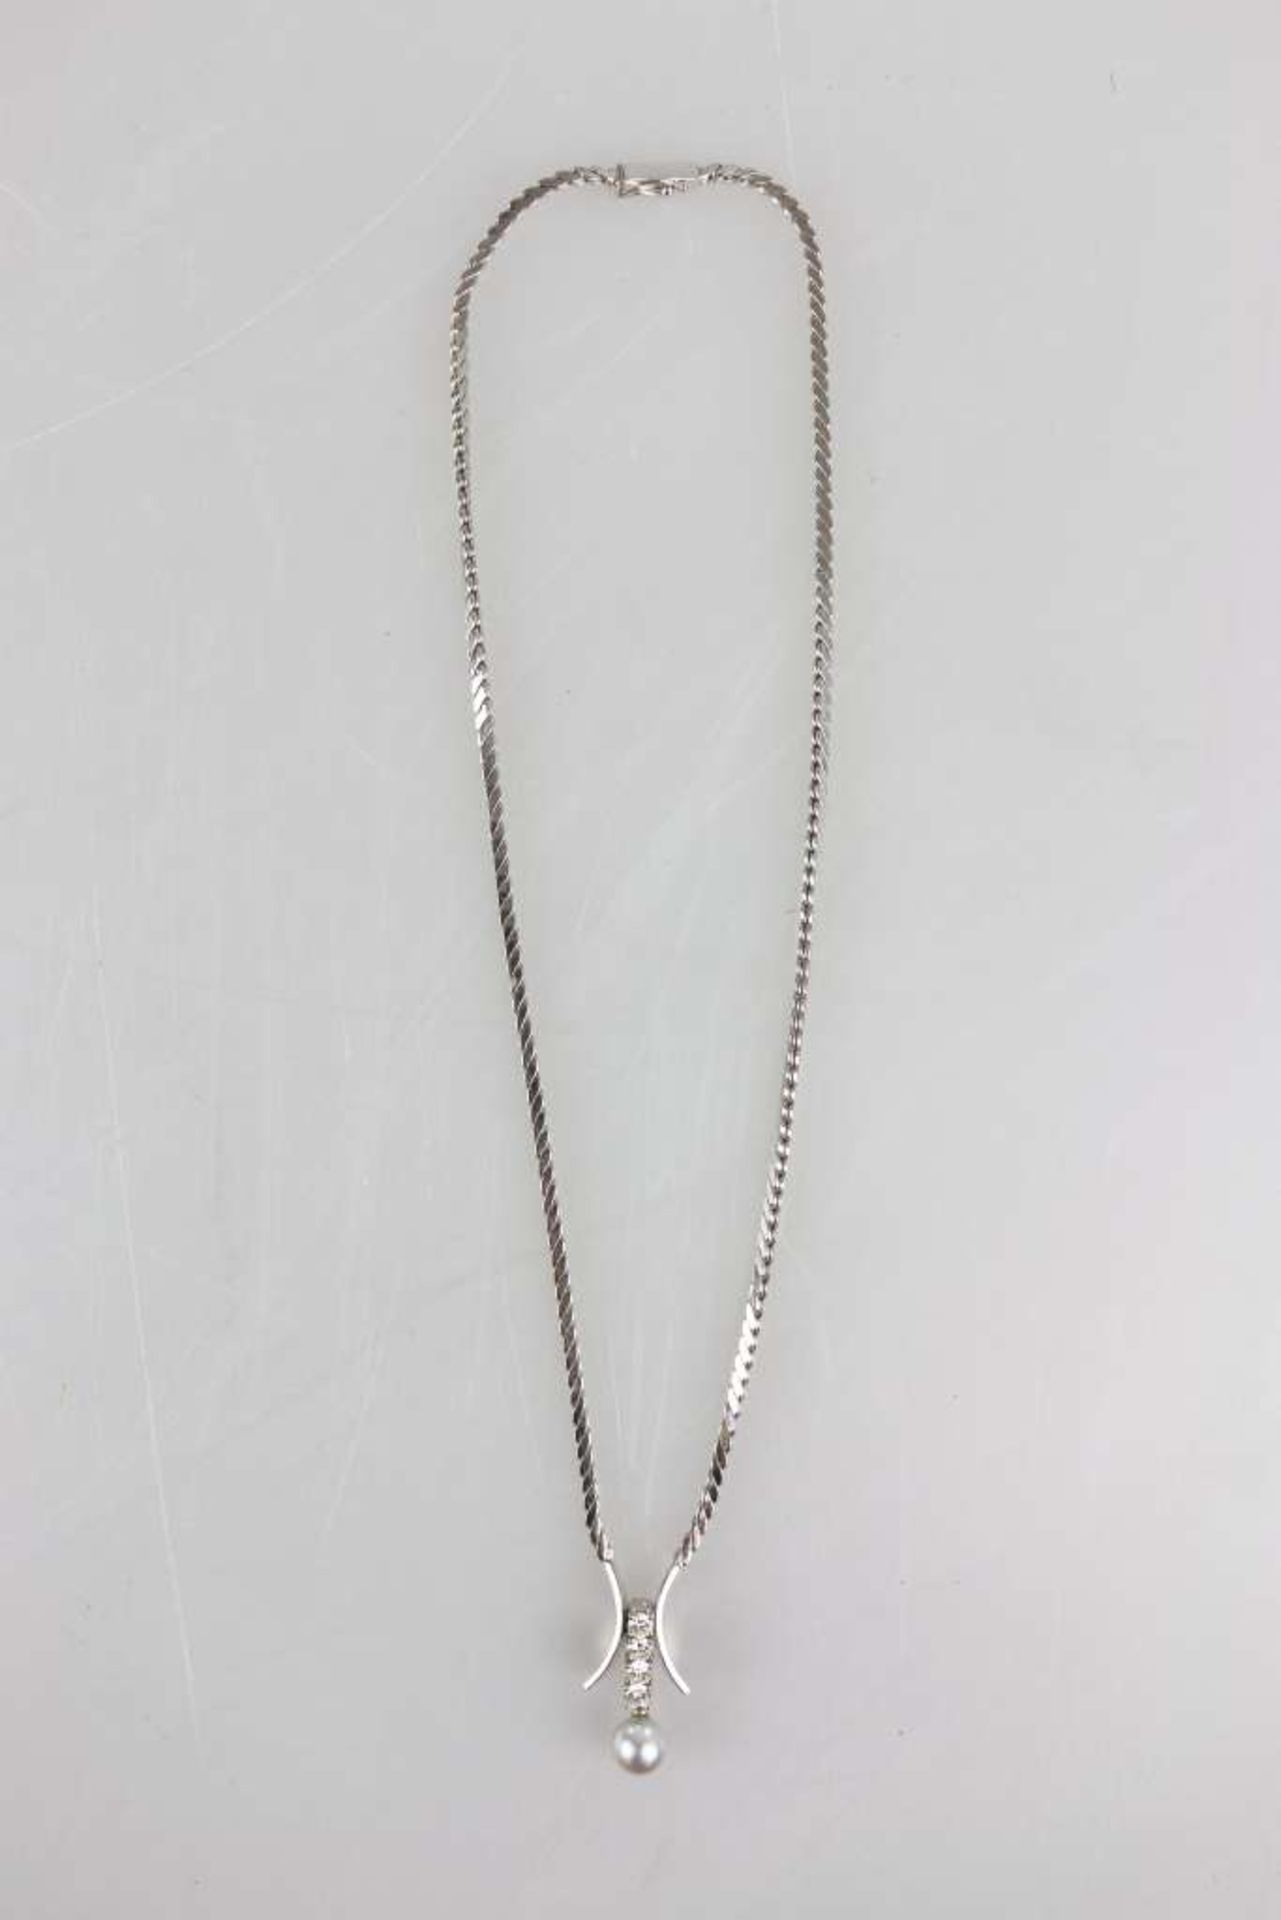 Halskette, 585er WG mit 2 sichelförmigen Enden, dazwischen eingefasst 4 Brillanten in Reihe von je